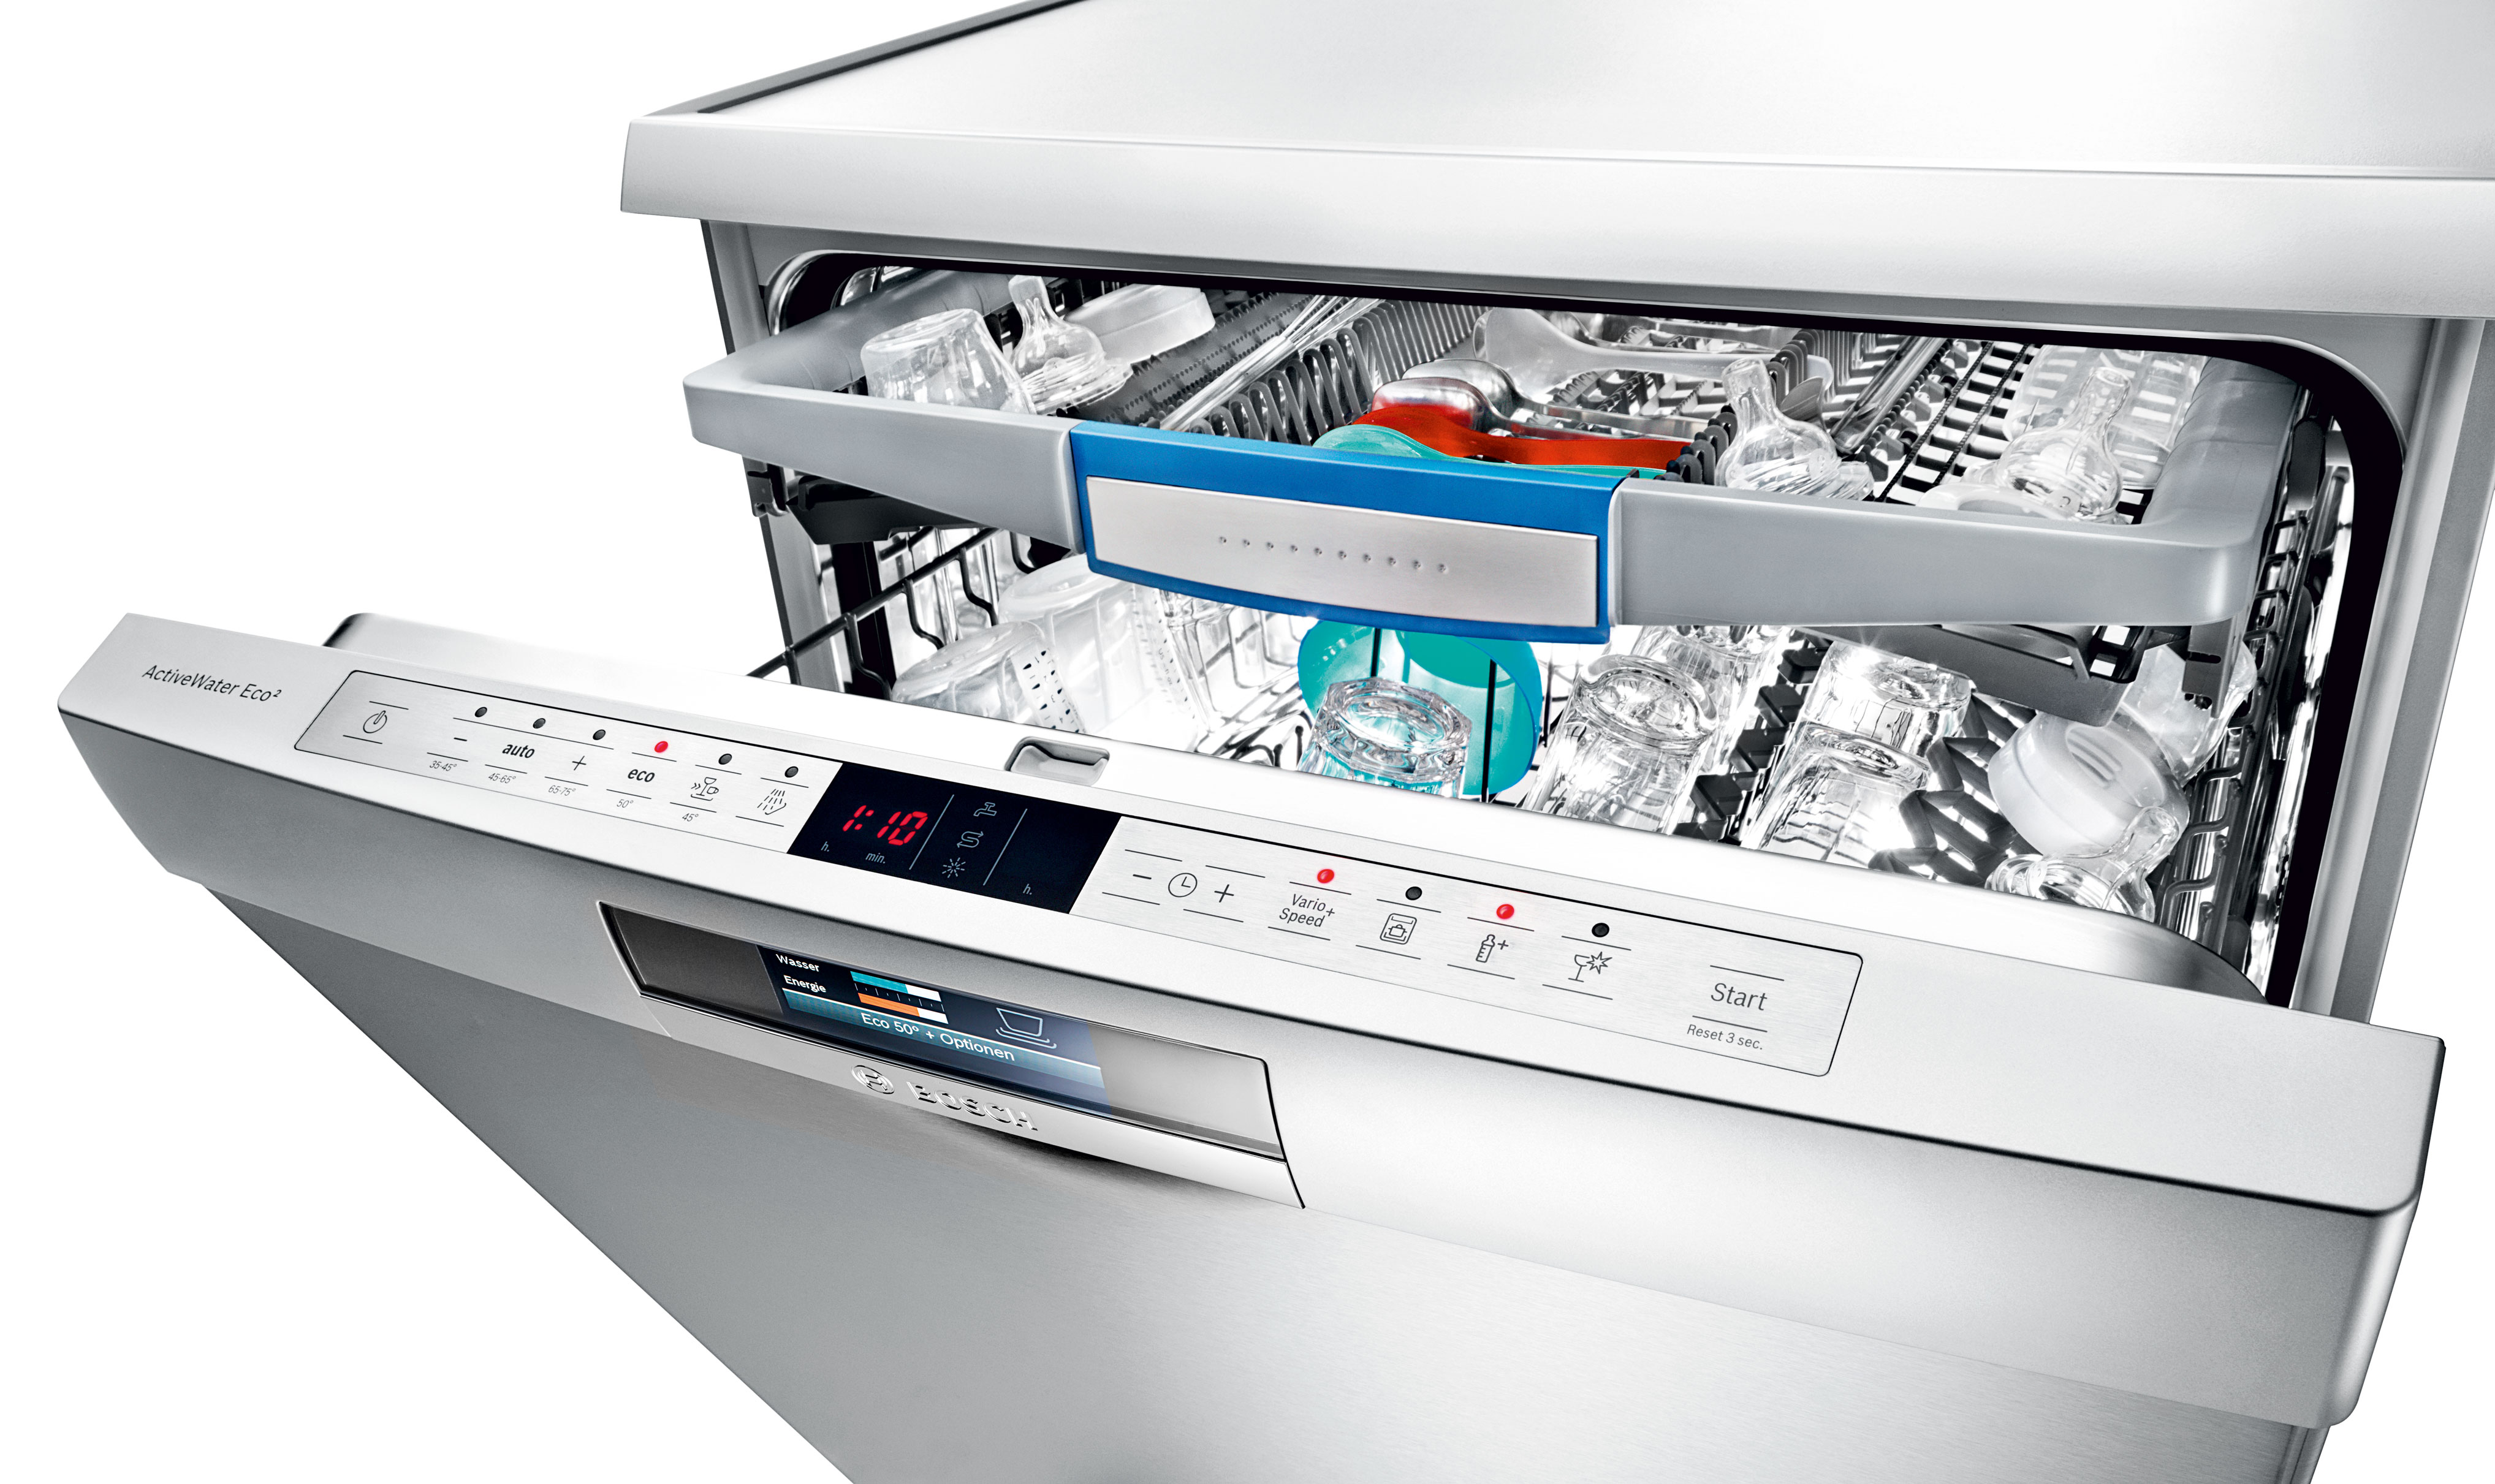 Ремонт посудомоечных машин bosch в москве. Посудомоечная машина Bosch sps66ti00e. Посудомоечная машина Bosch SMS 58n68 Ep. Посудомоечная машина Bosch Appliances Dishwashers. Посудомойка Bosch ACTIVEWATER Eco.